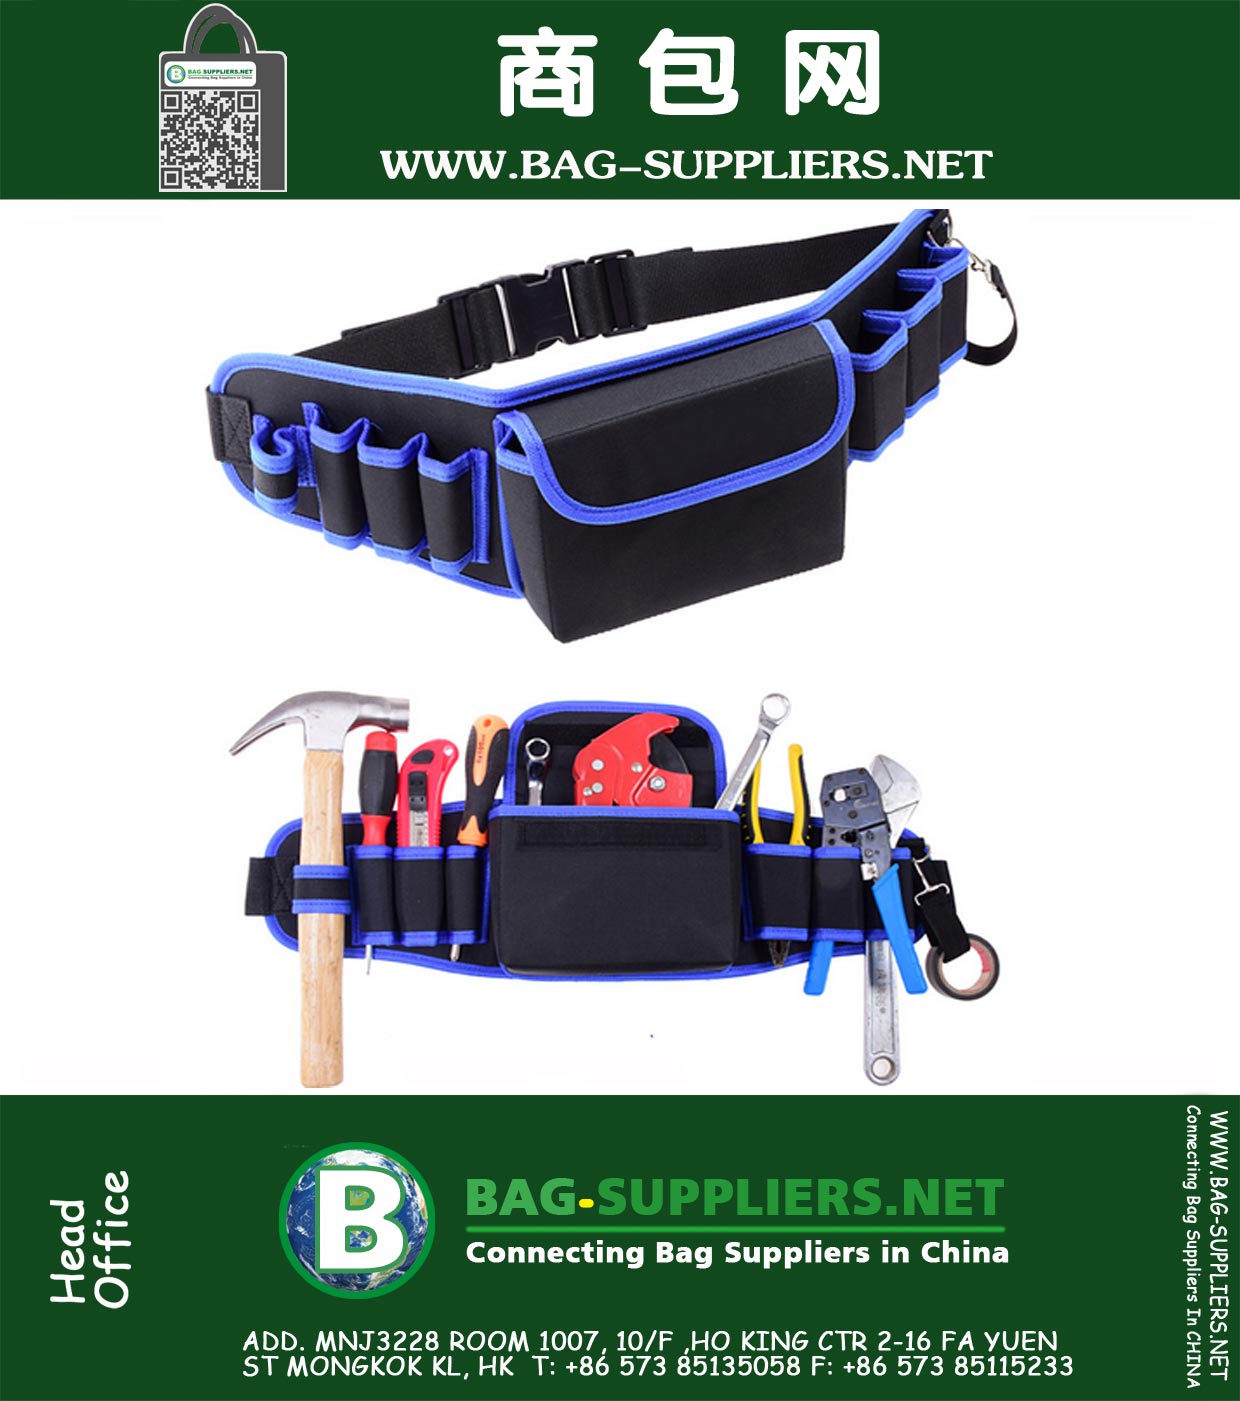 Oxford doek 9 in1 Elektriciens Waist Pocket Tool Belt Bag hamers, tangen en schroevendraaier Carry Case Holder